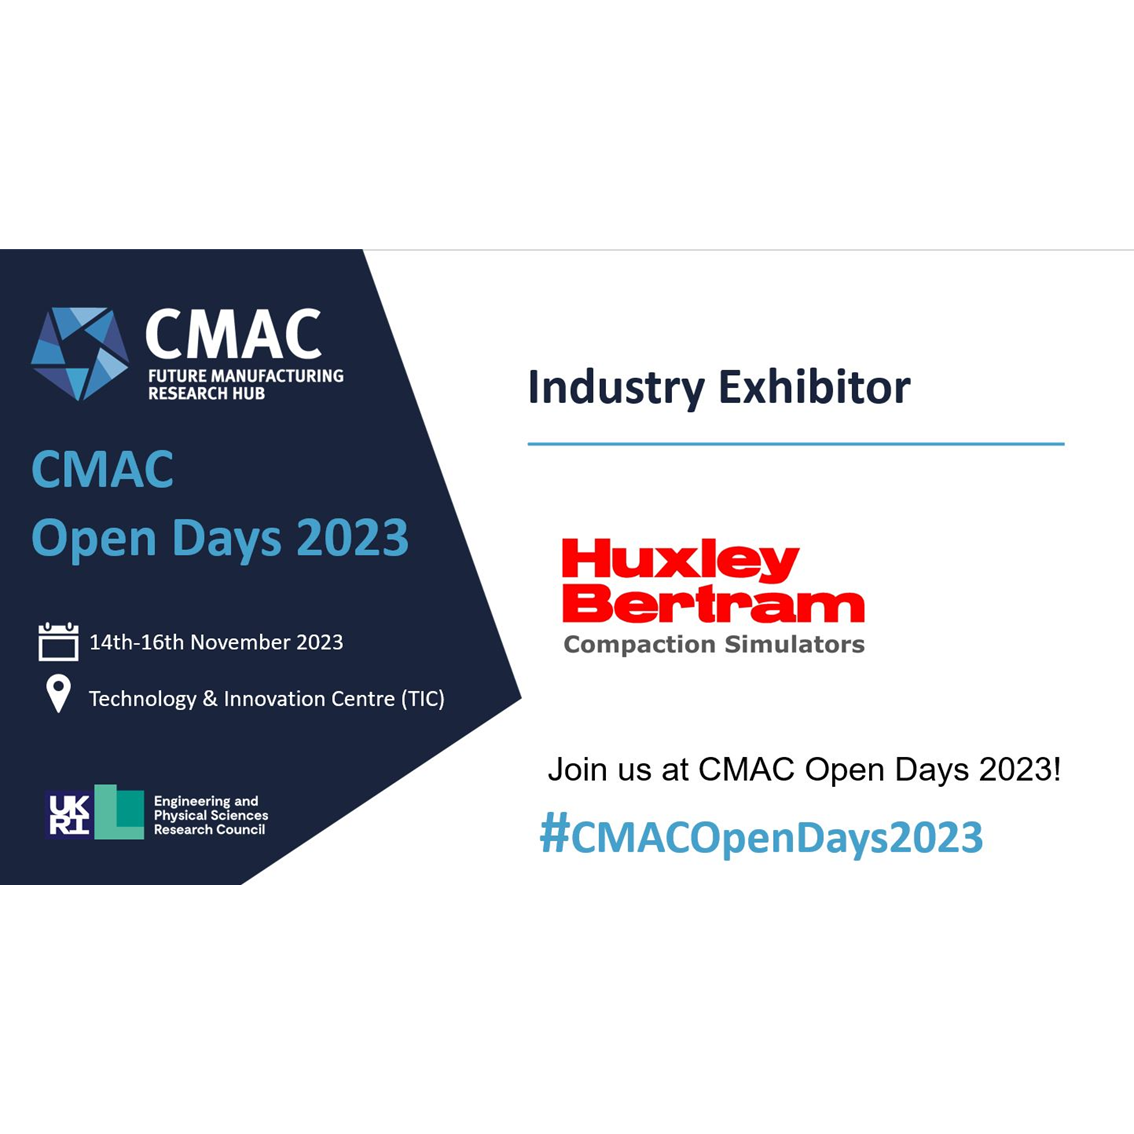 Huxley Bertram attending CMAC Open Days 2023 as an Industry Exhibitor